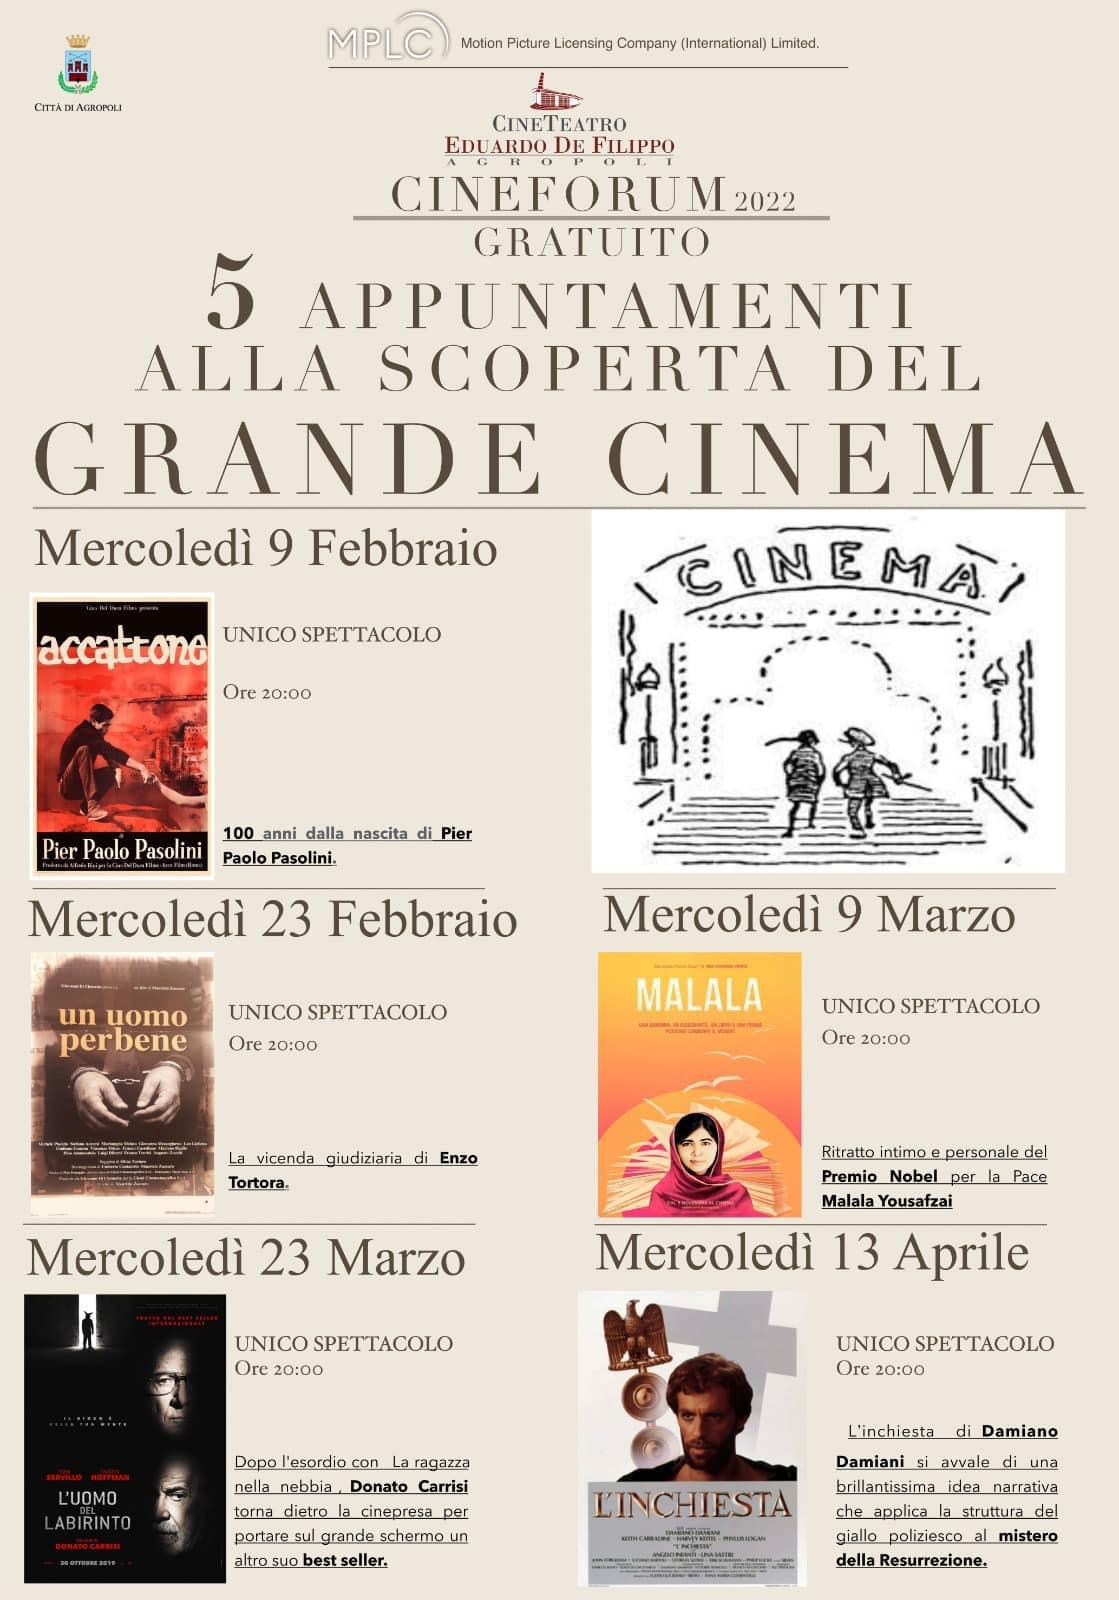 Agropoli, cineforum gratuito al cineteatro De Filippo alla scoperta del grande cinema